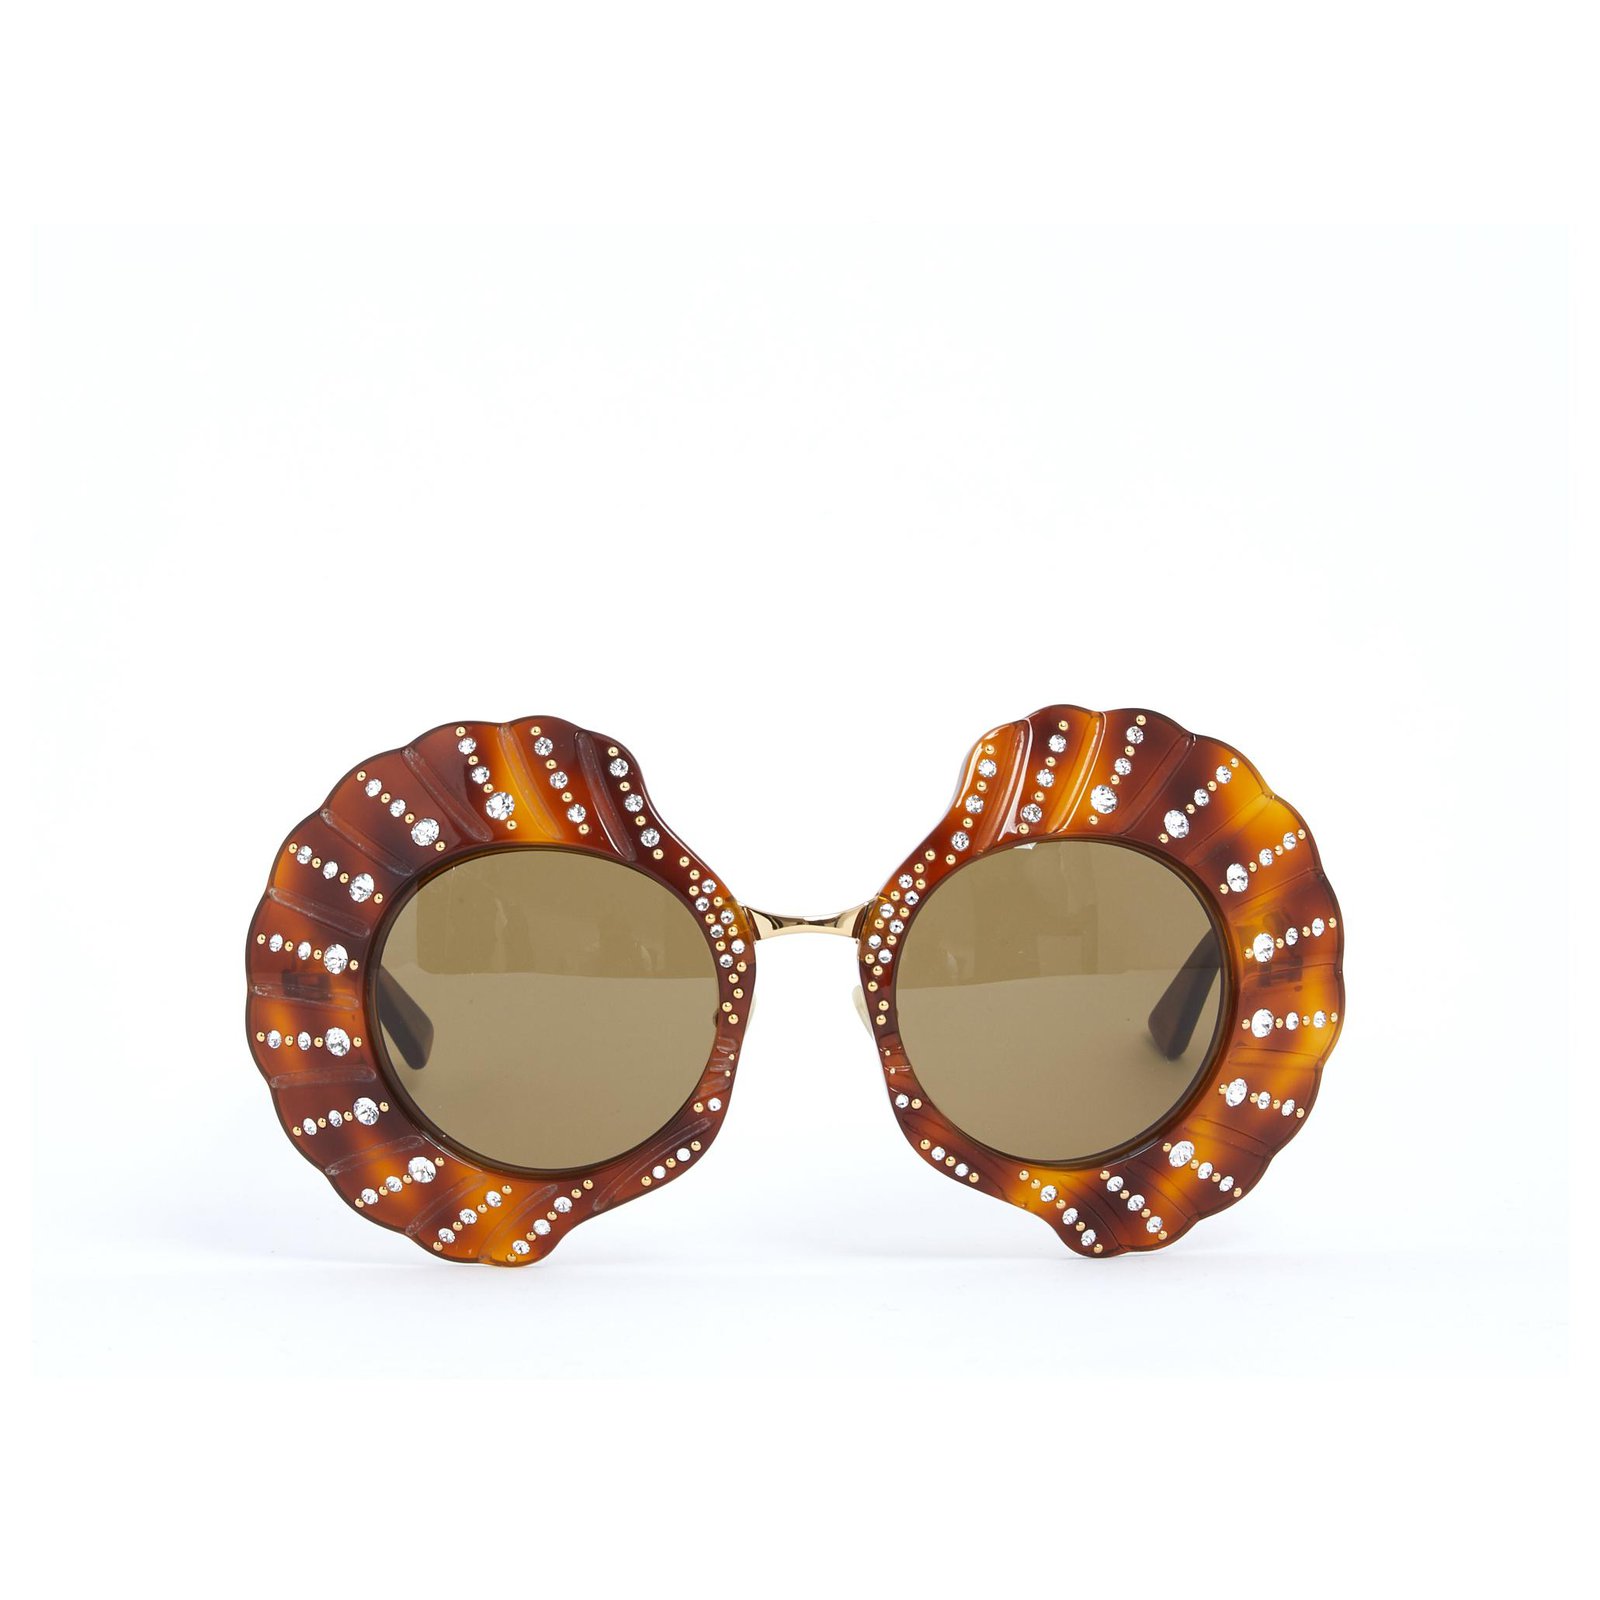 limited edition gucci sunglasses